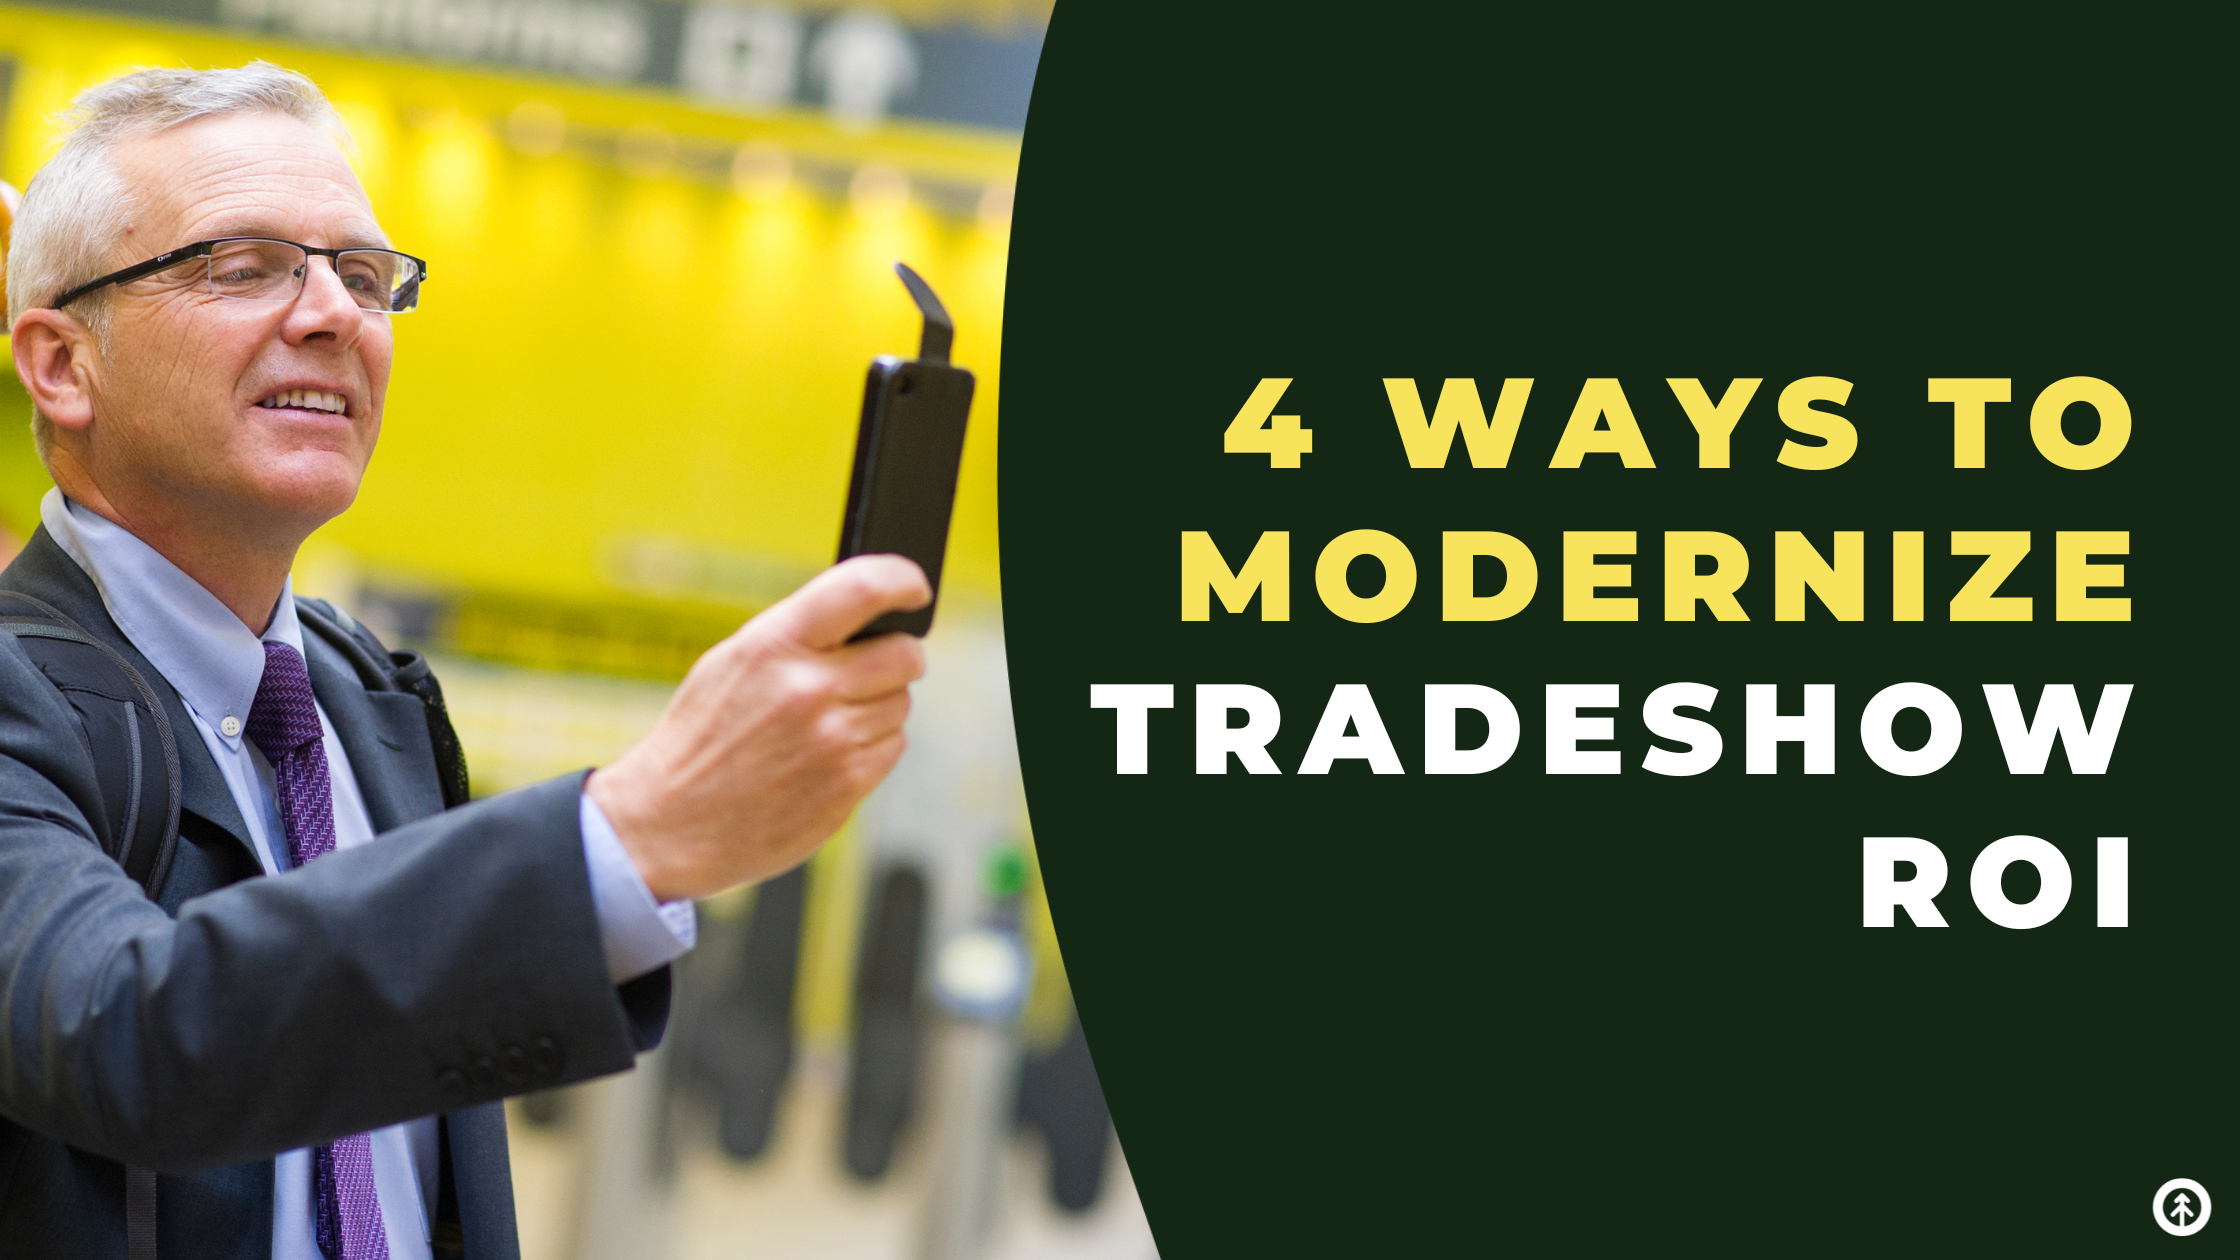 4 Ways to Modernize Tradeshow ROI